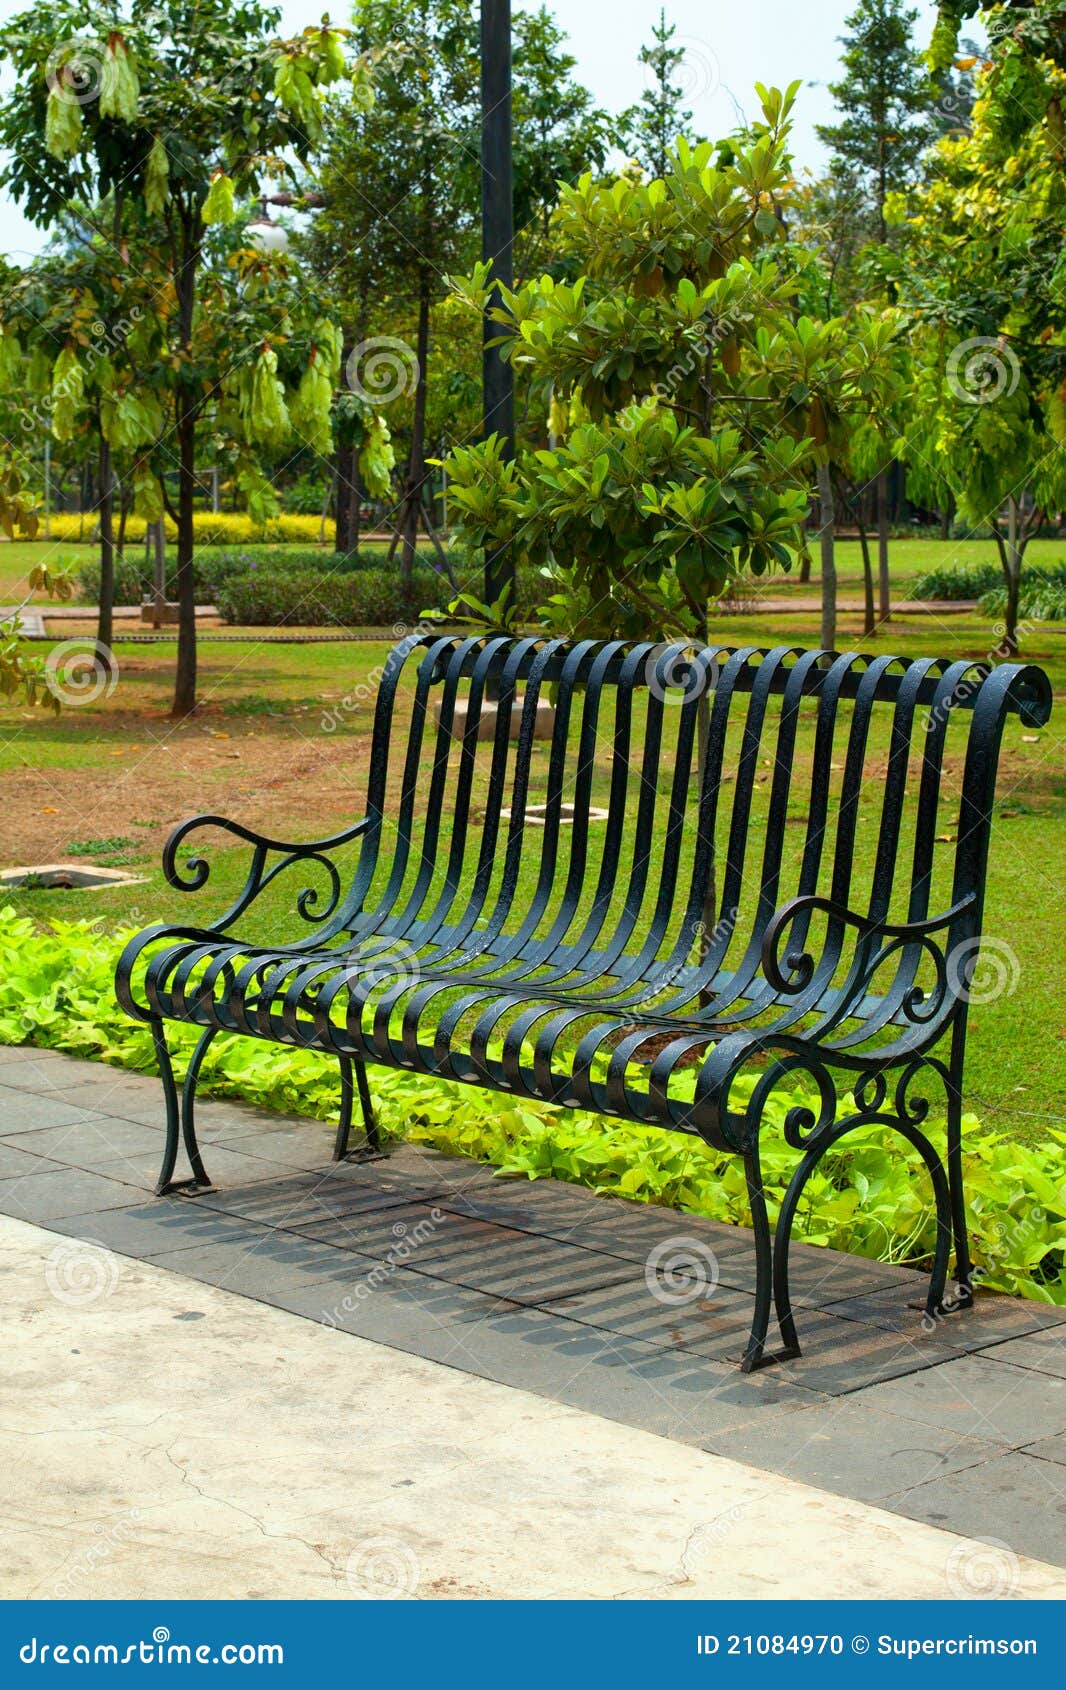 A romantic empty park bench beside a pavement